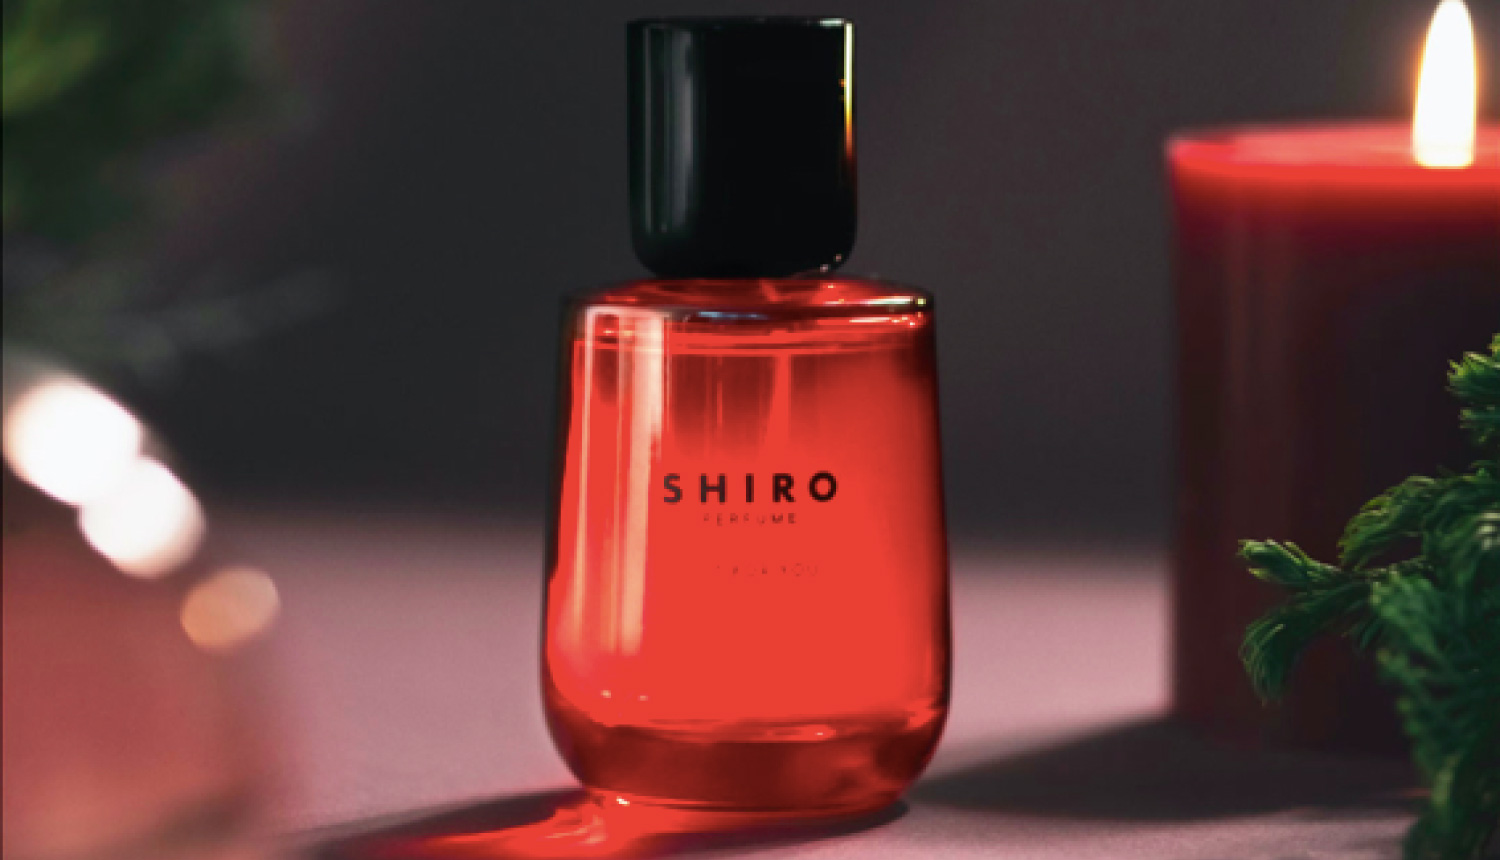 shiro-perfume-%e3%82%b7%e3%83%ad%e9%a6%99%e6%b0%b4-%e7%be%8e%e5%a6%9d